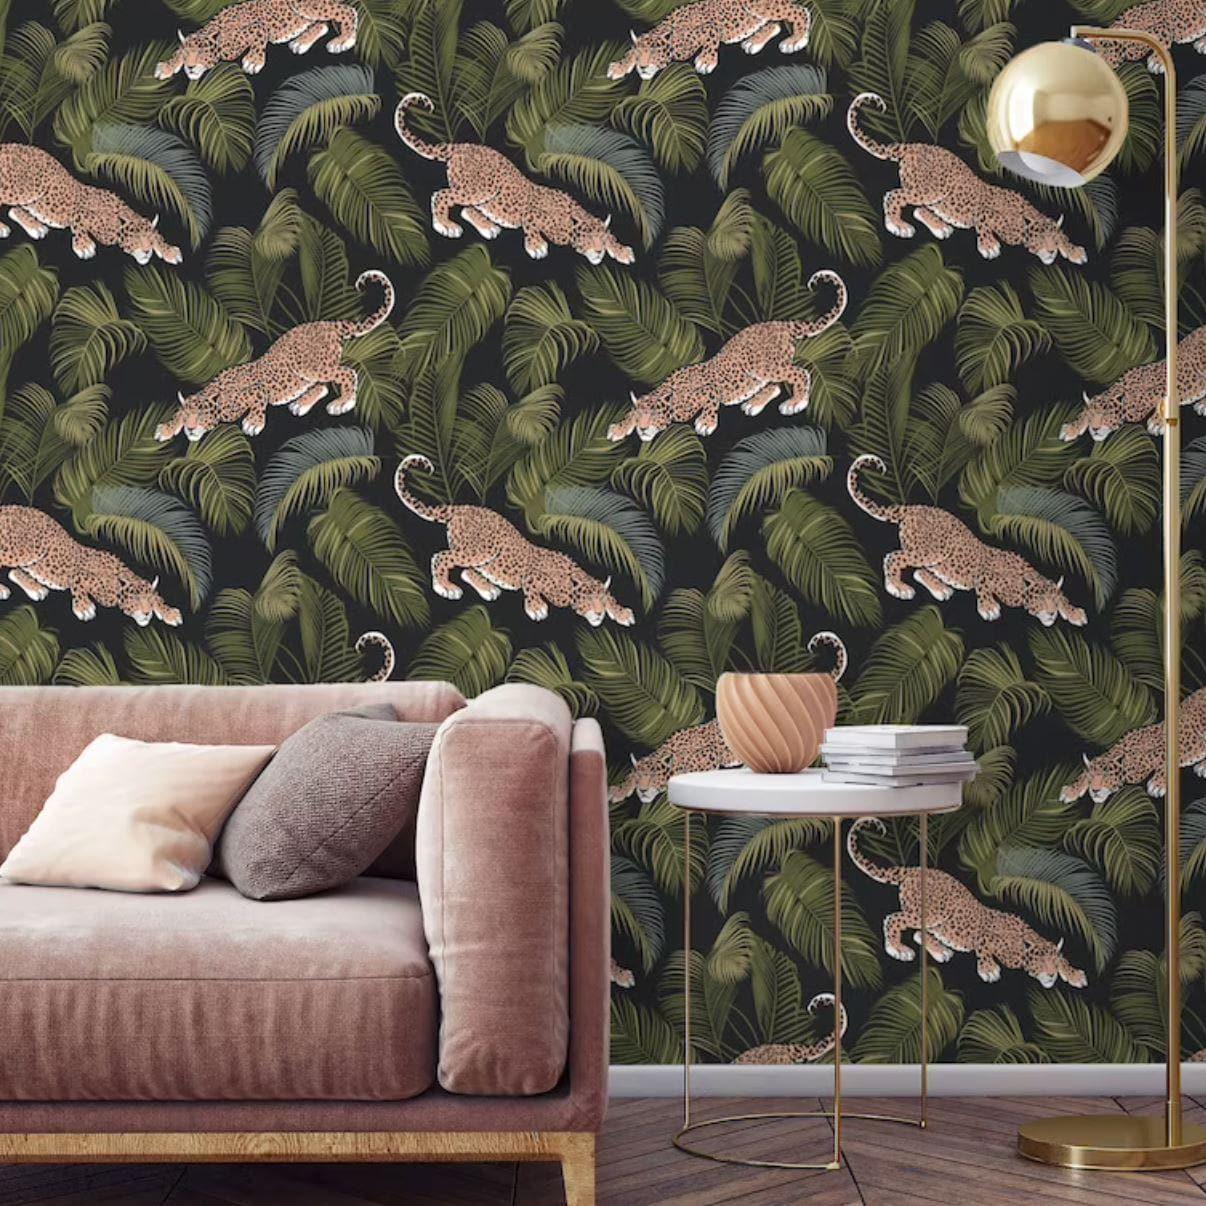 Jaguars in the Dark Jungle Wallpaper - MAIA HOMES